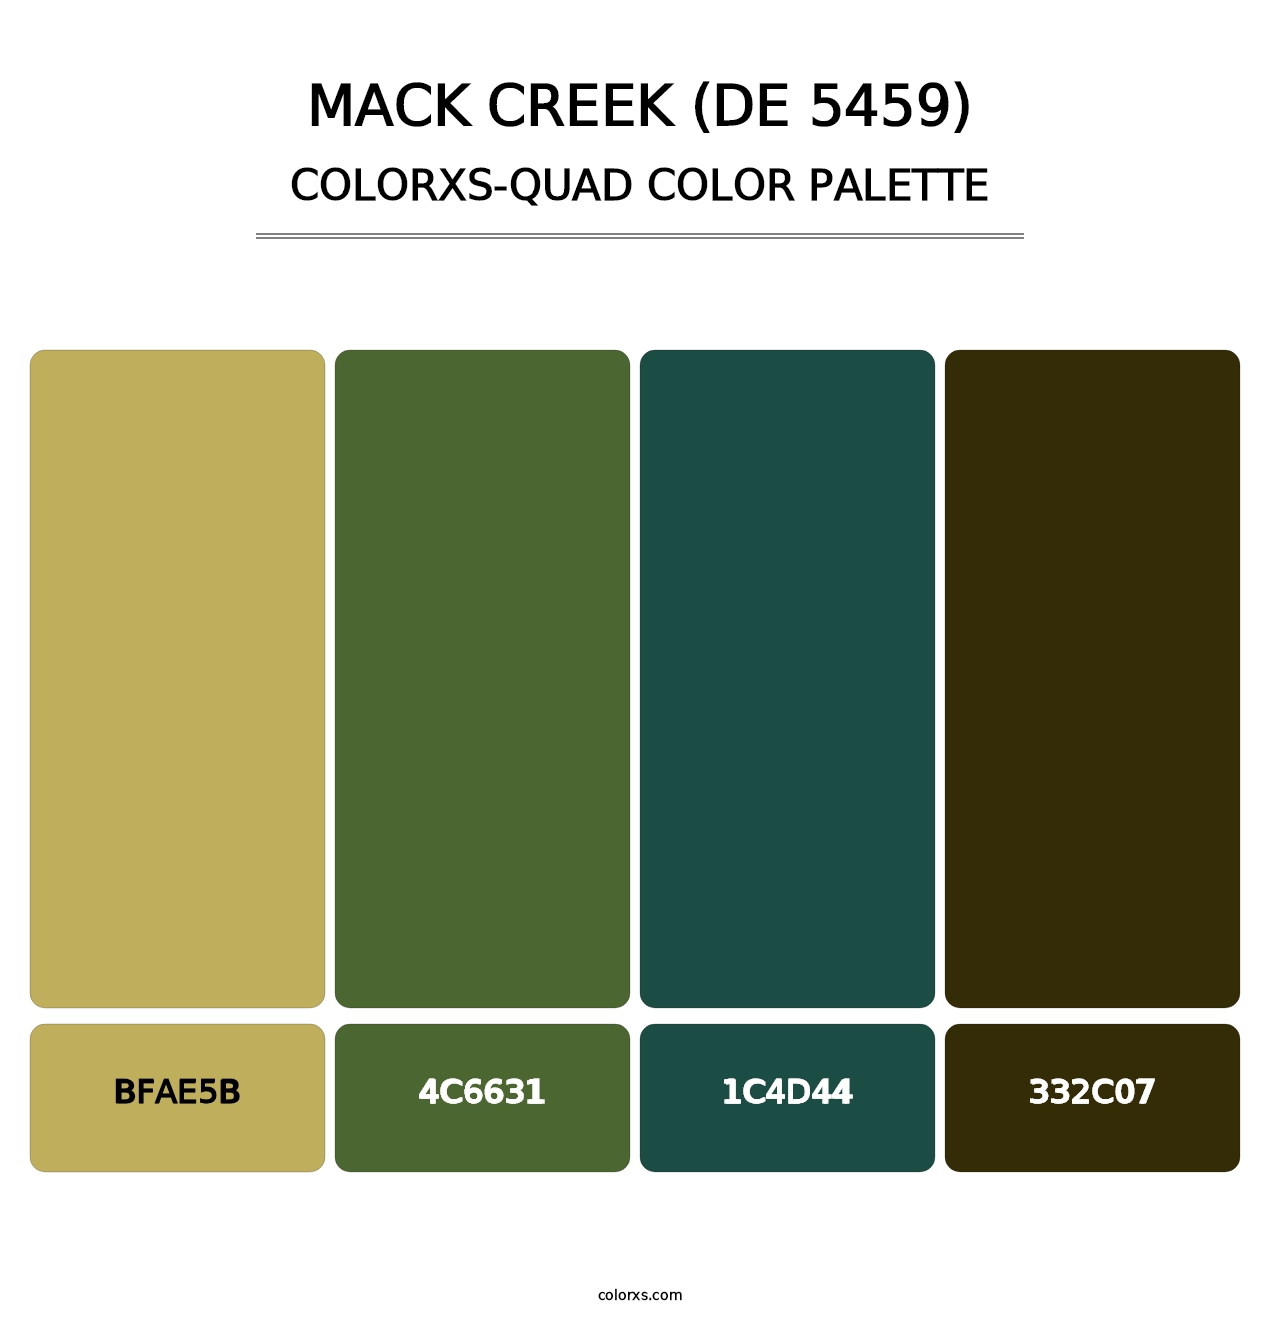 Mack Creek (DE 5459) - Colorxs Quad Palette